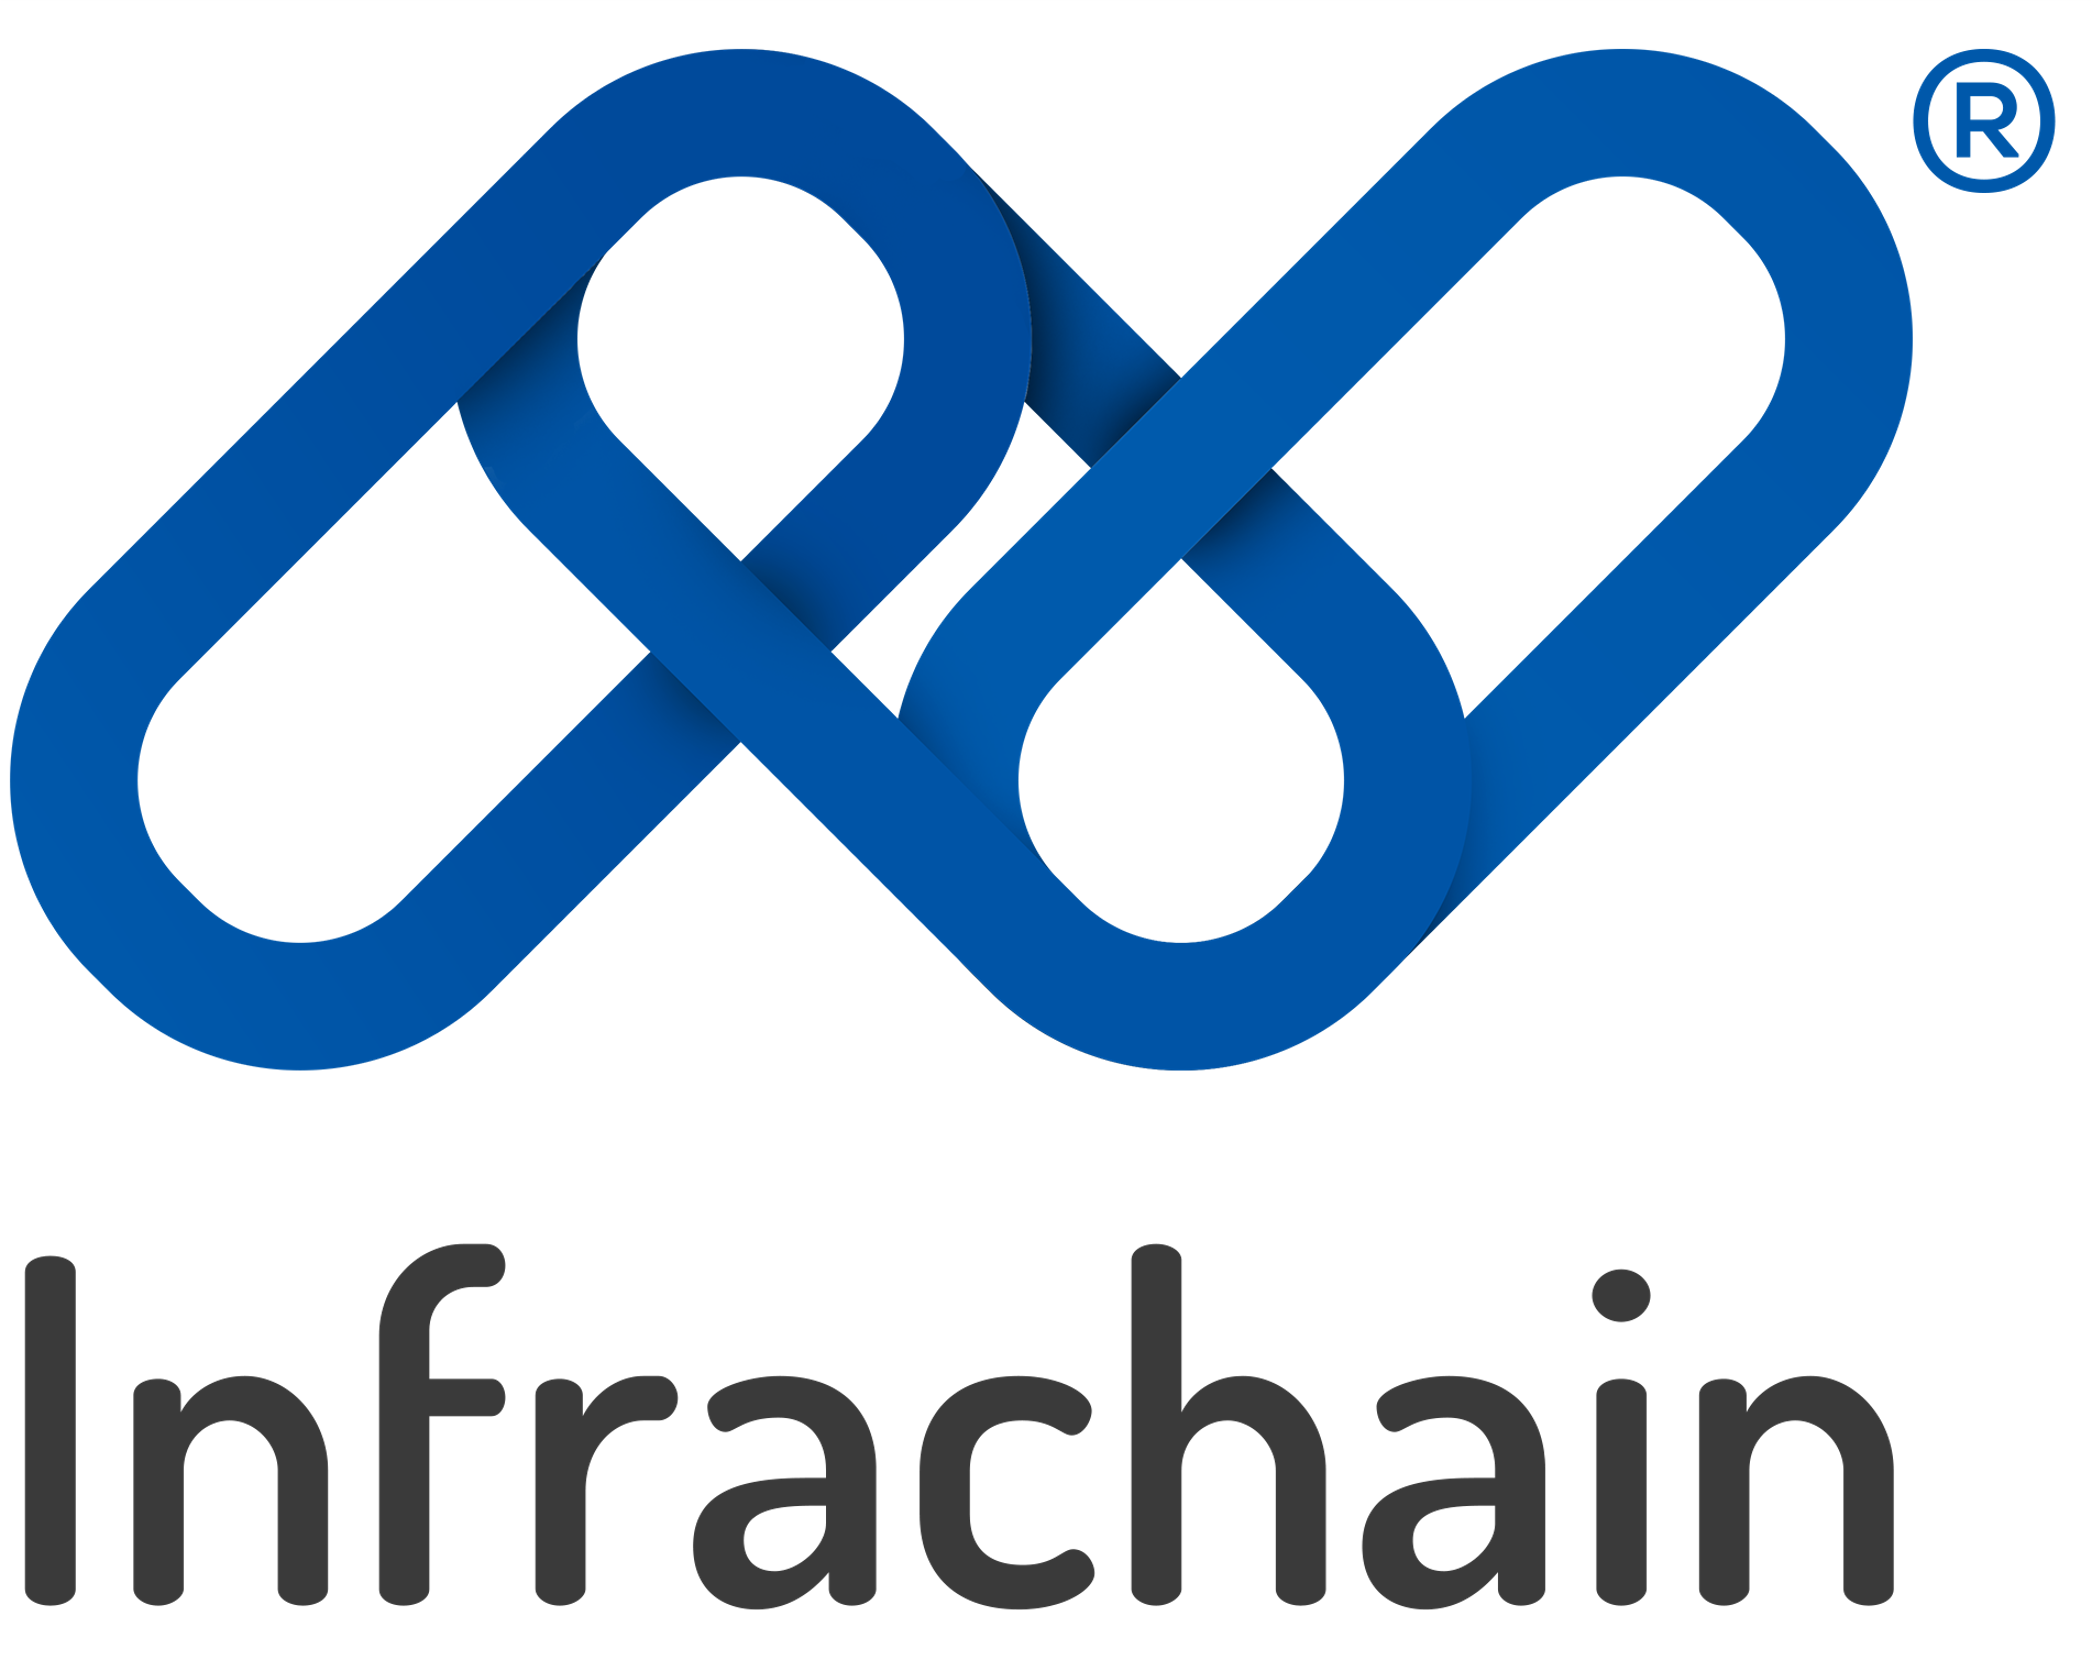 Infrachain Logo - supervisor Etherna